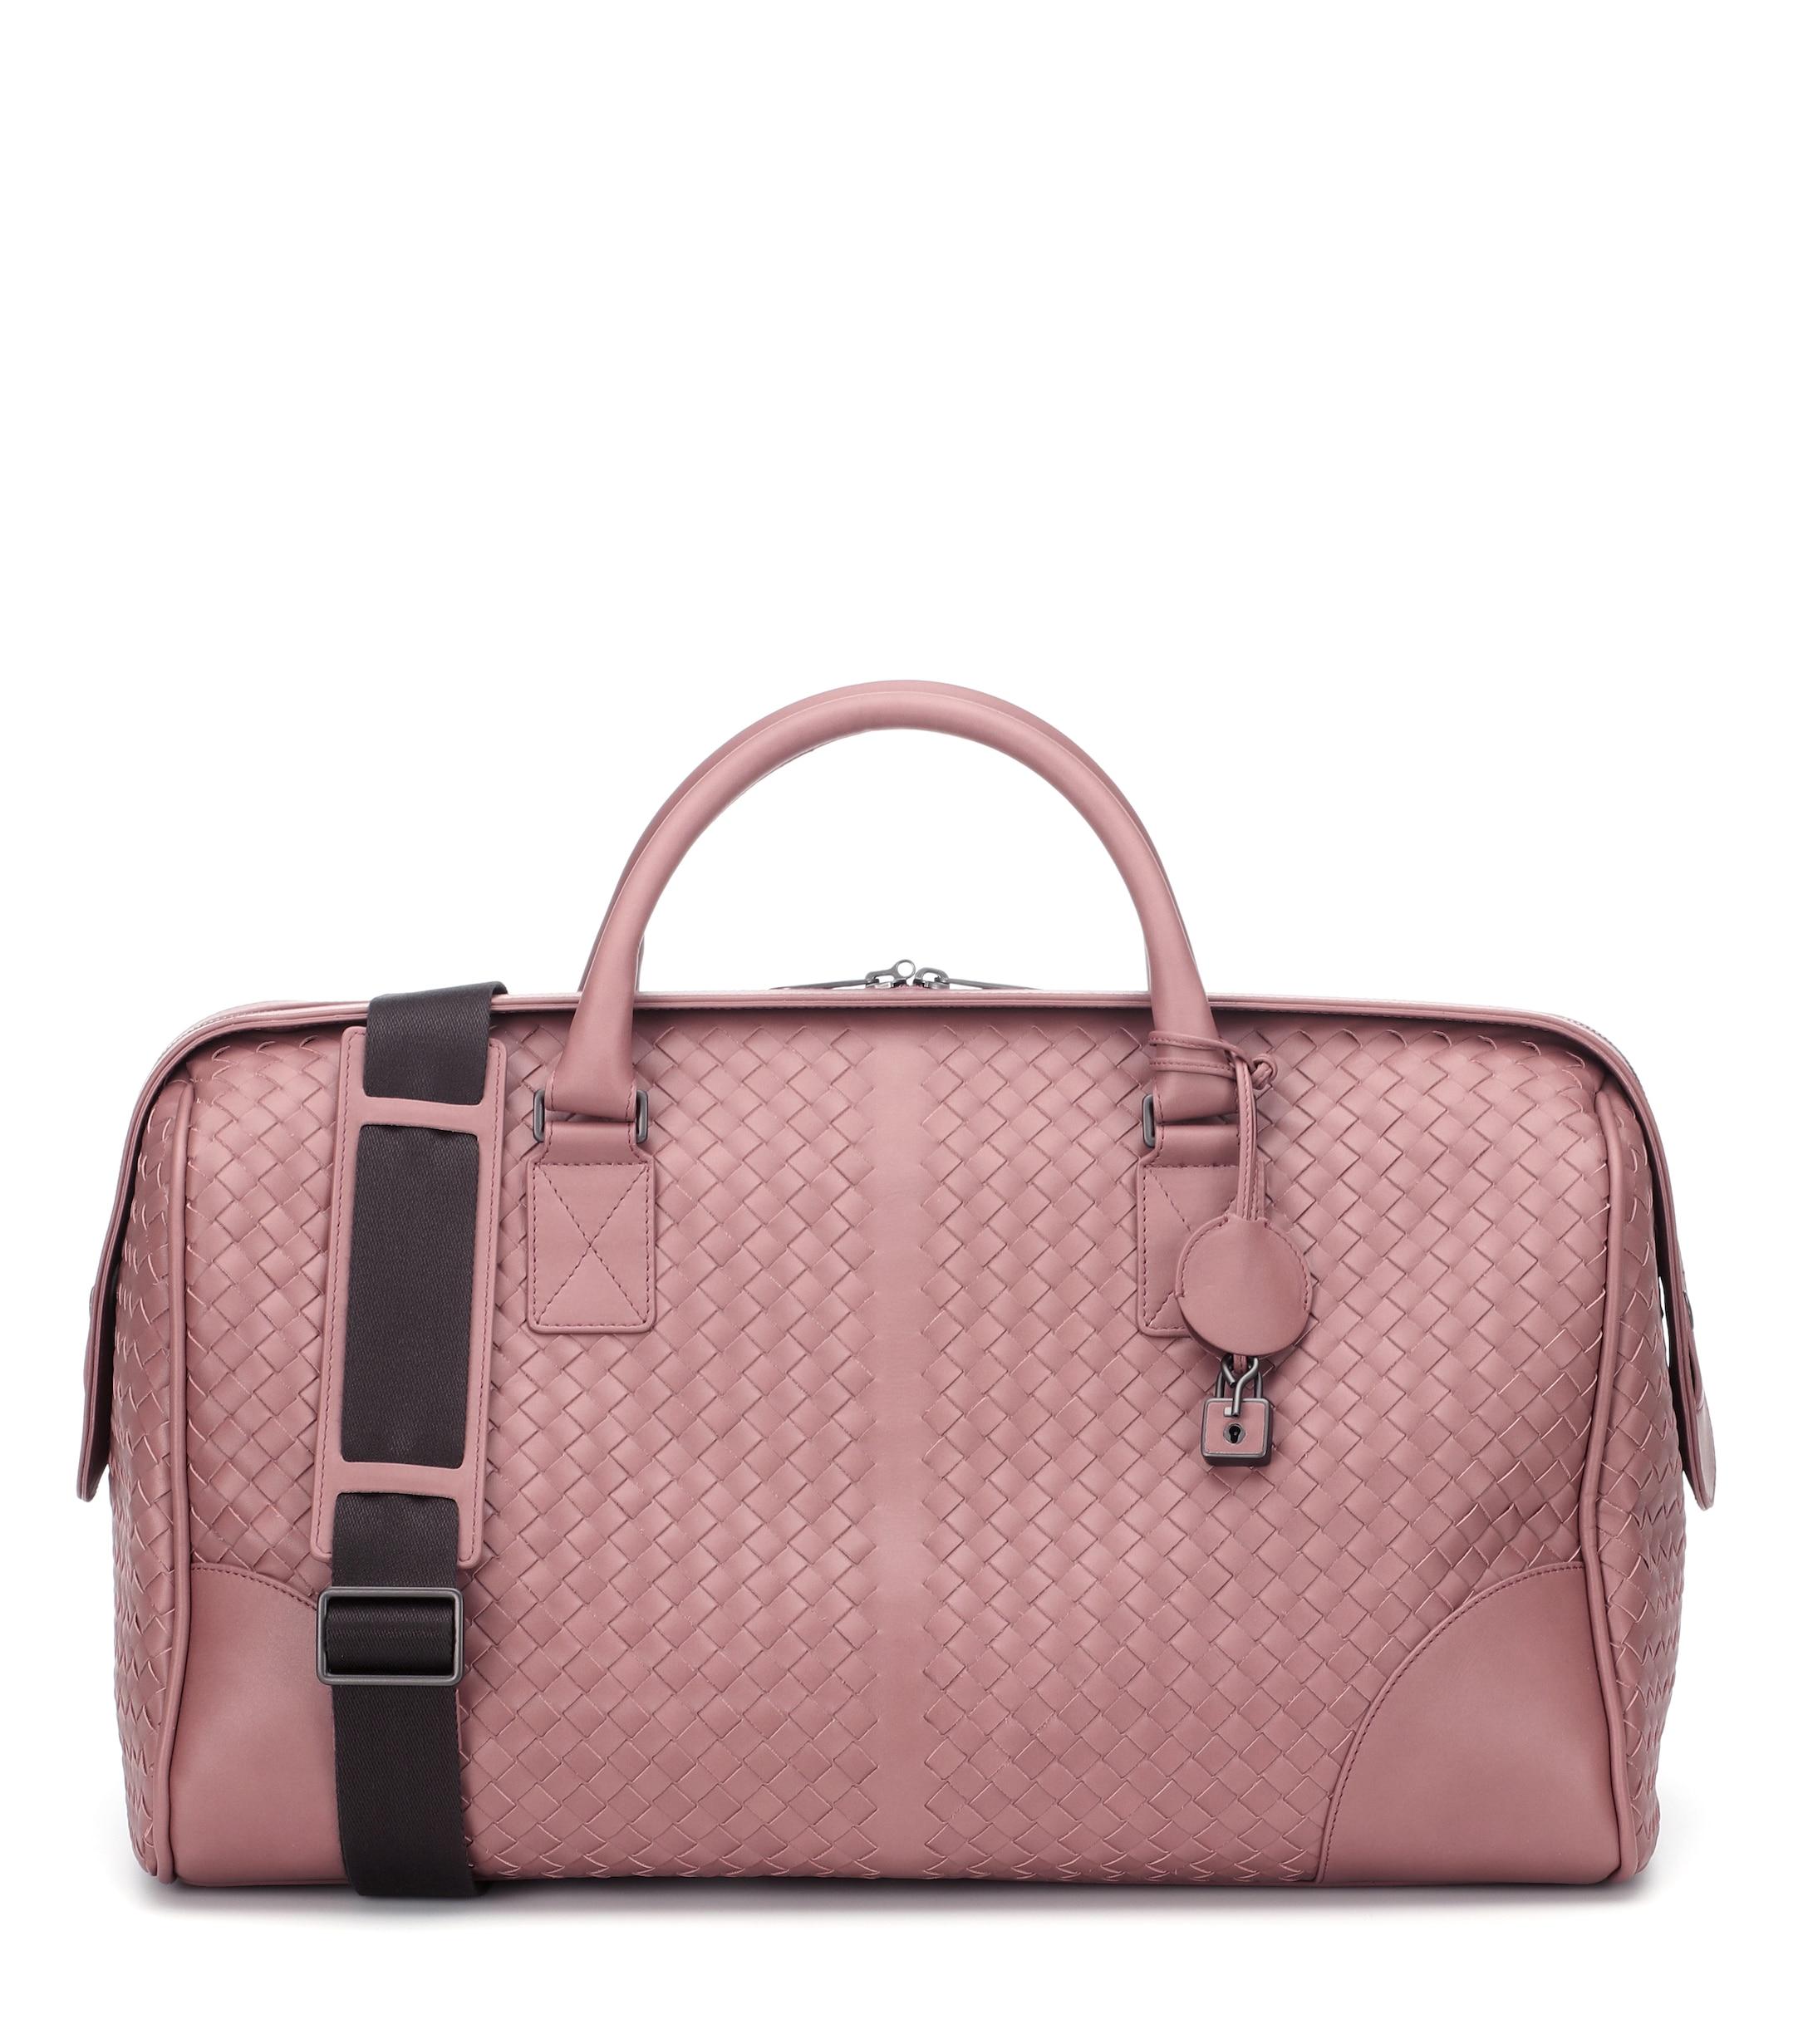 Bottega Leather Travel Bag in Pink Lyst